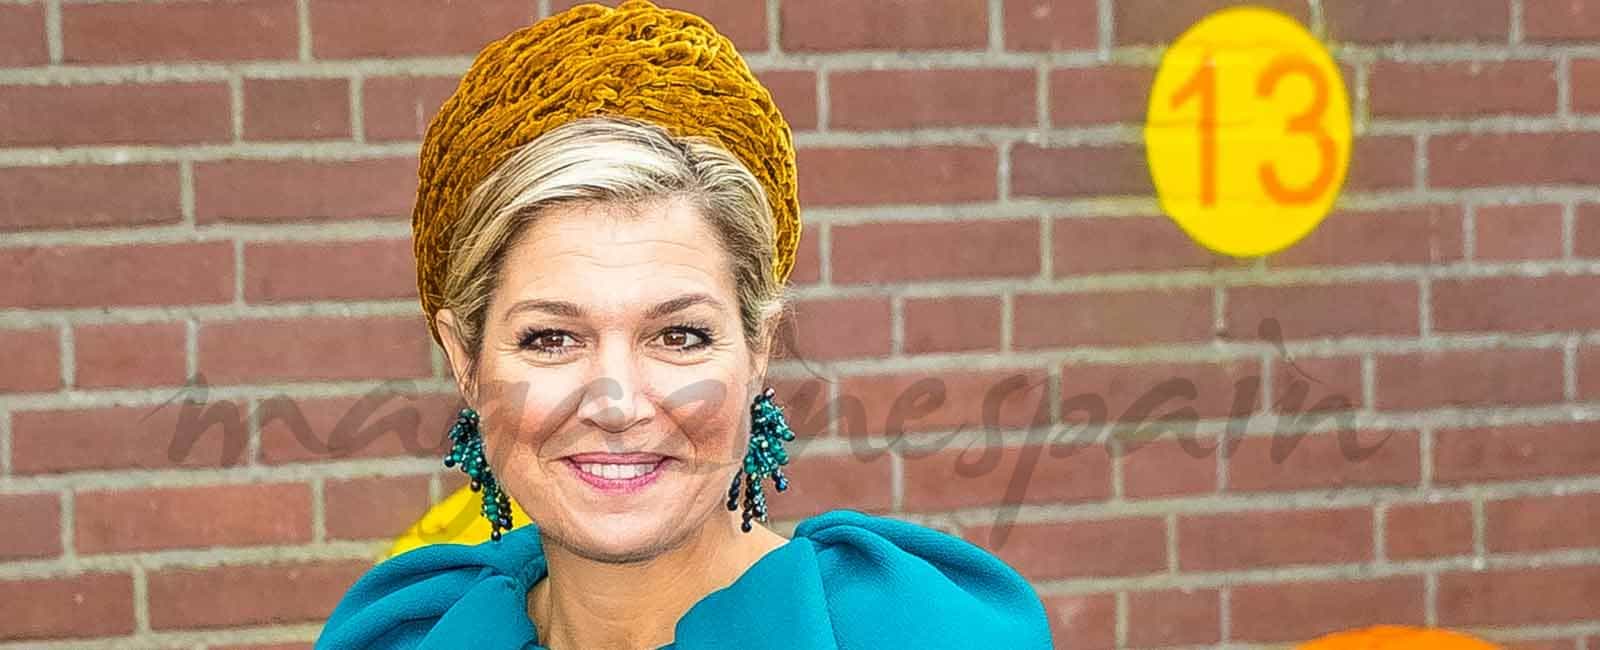 Máxima de Holanda, de nuevo apuesta por la moda del turbante